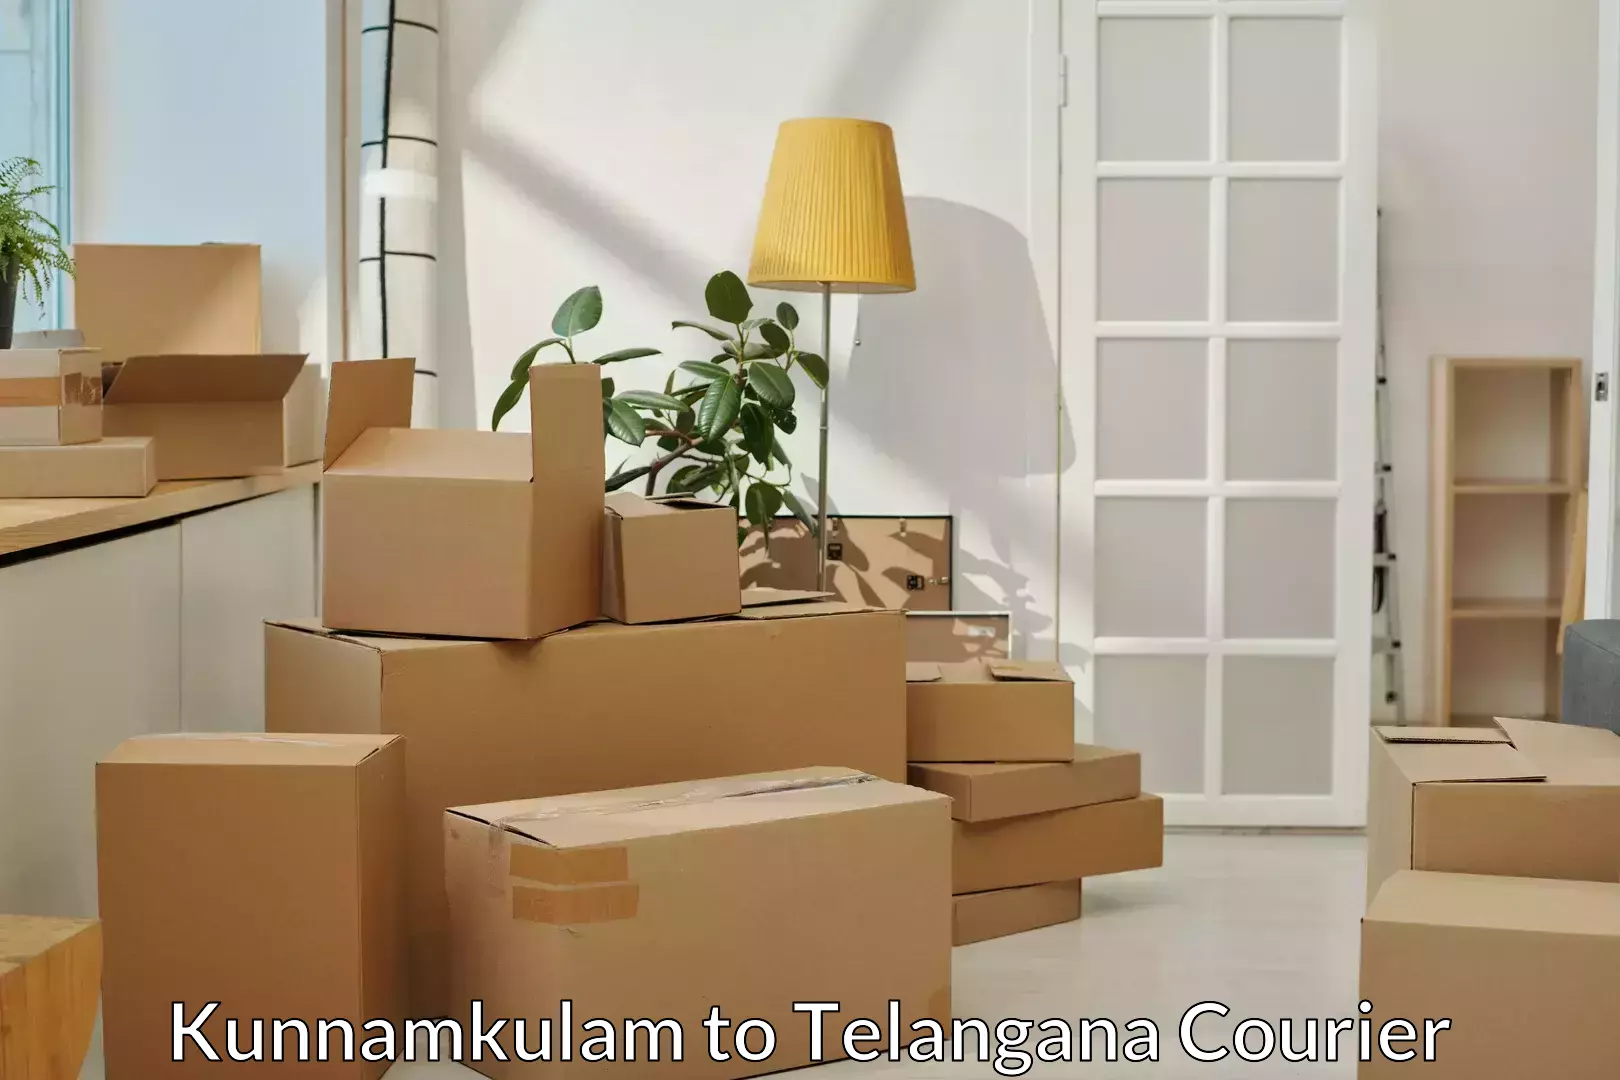 Professional furniture movers Kunnamkulam to Padmajiwadi